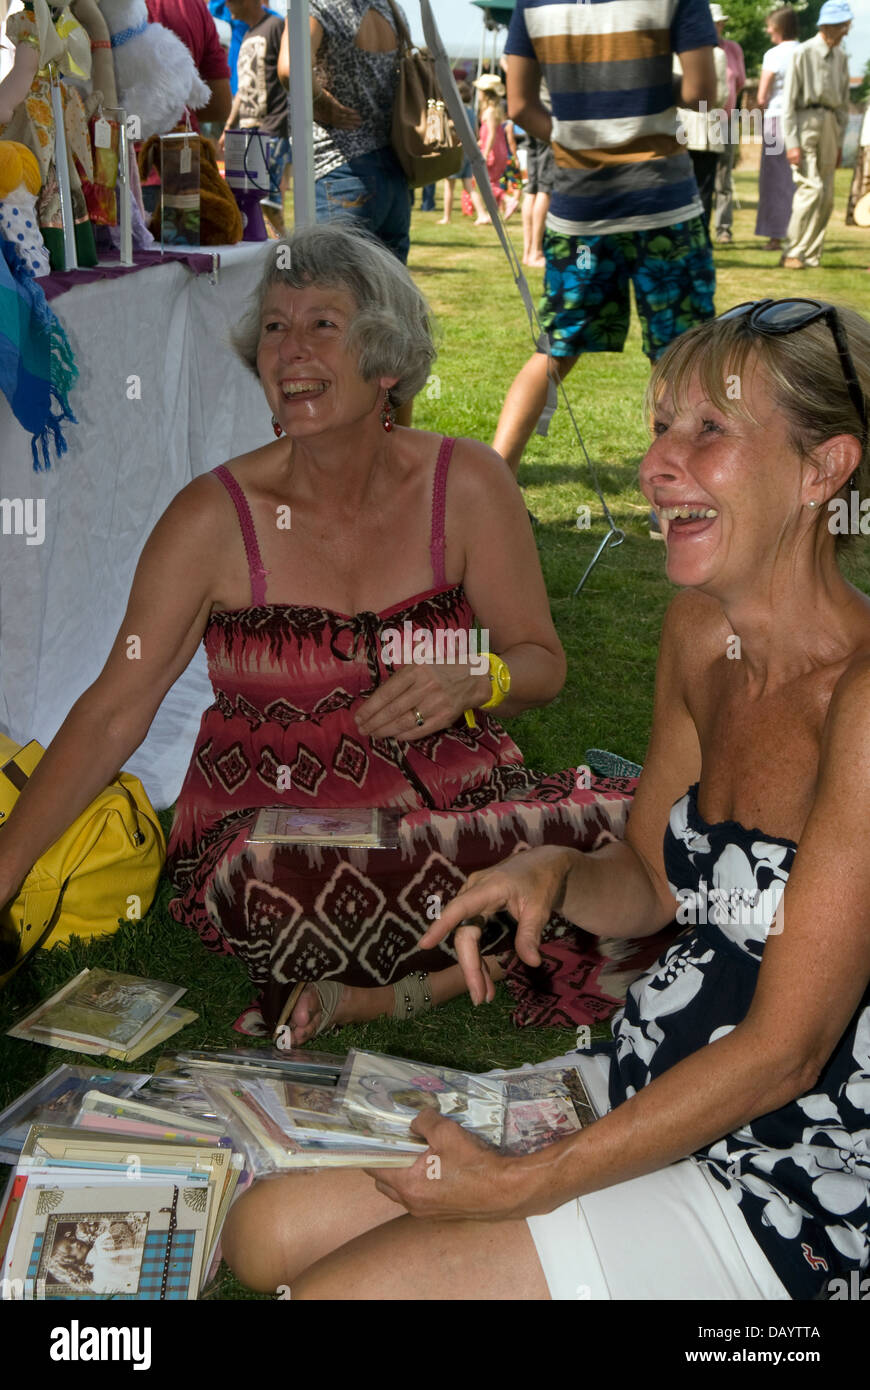 Rire à gogo à Worldham Fête du Village, Hampshire, Royaume-Uni. Dimanche 14 juillet 2013. Banque D'Images